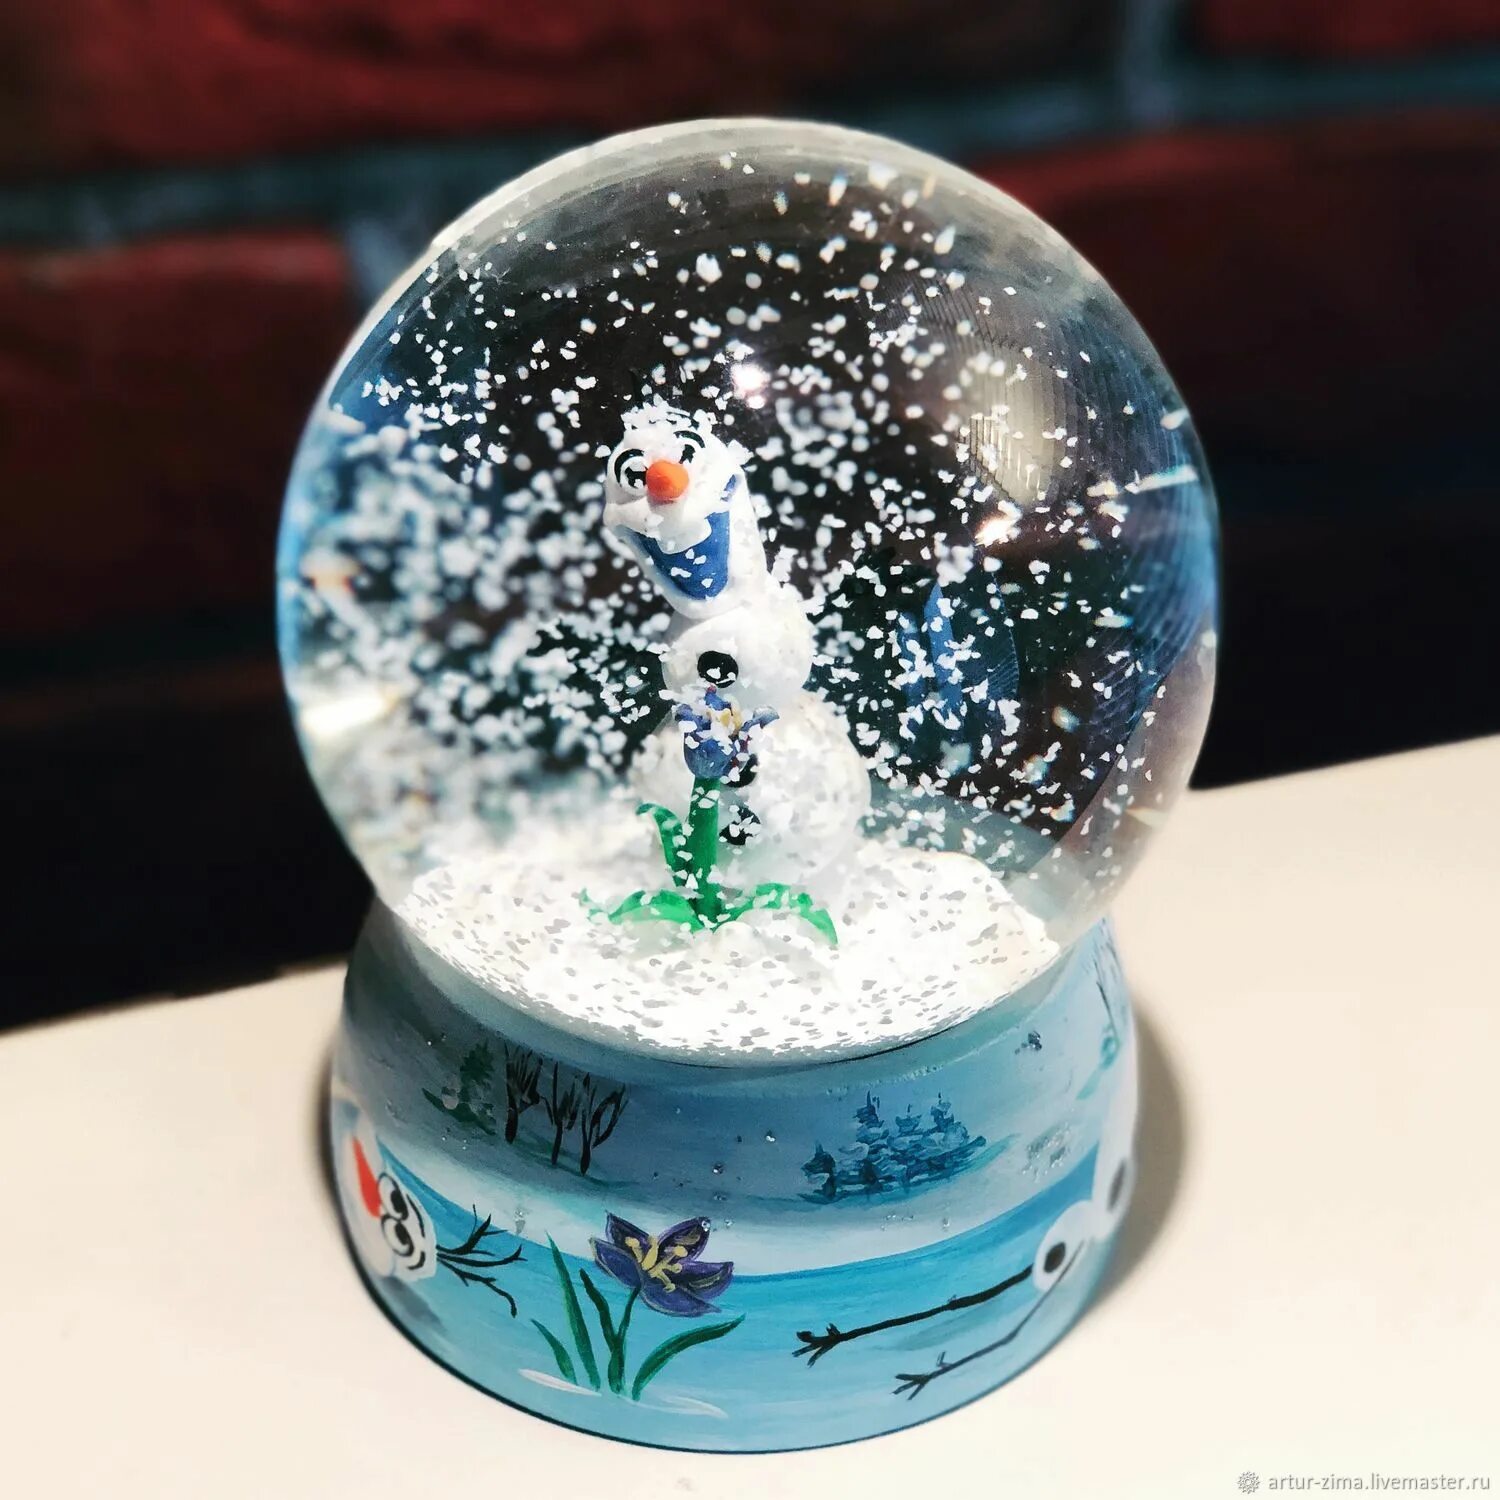 Шары внутри снег. Снежный шар. Стеклянный шар со снеговиком. Шар со снегом. Снежный шар со снеговиком.